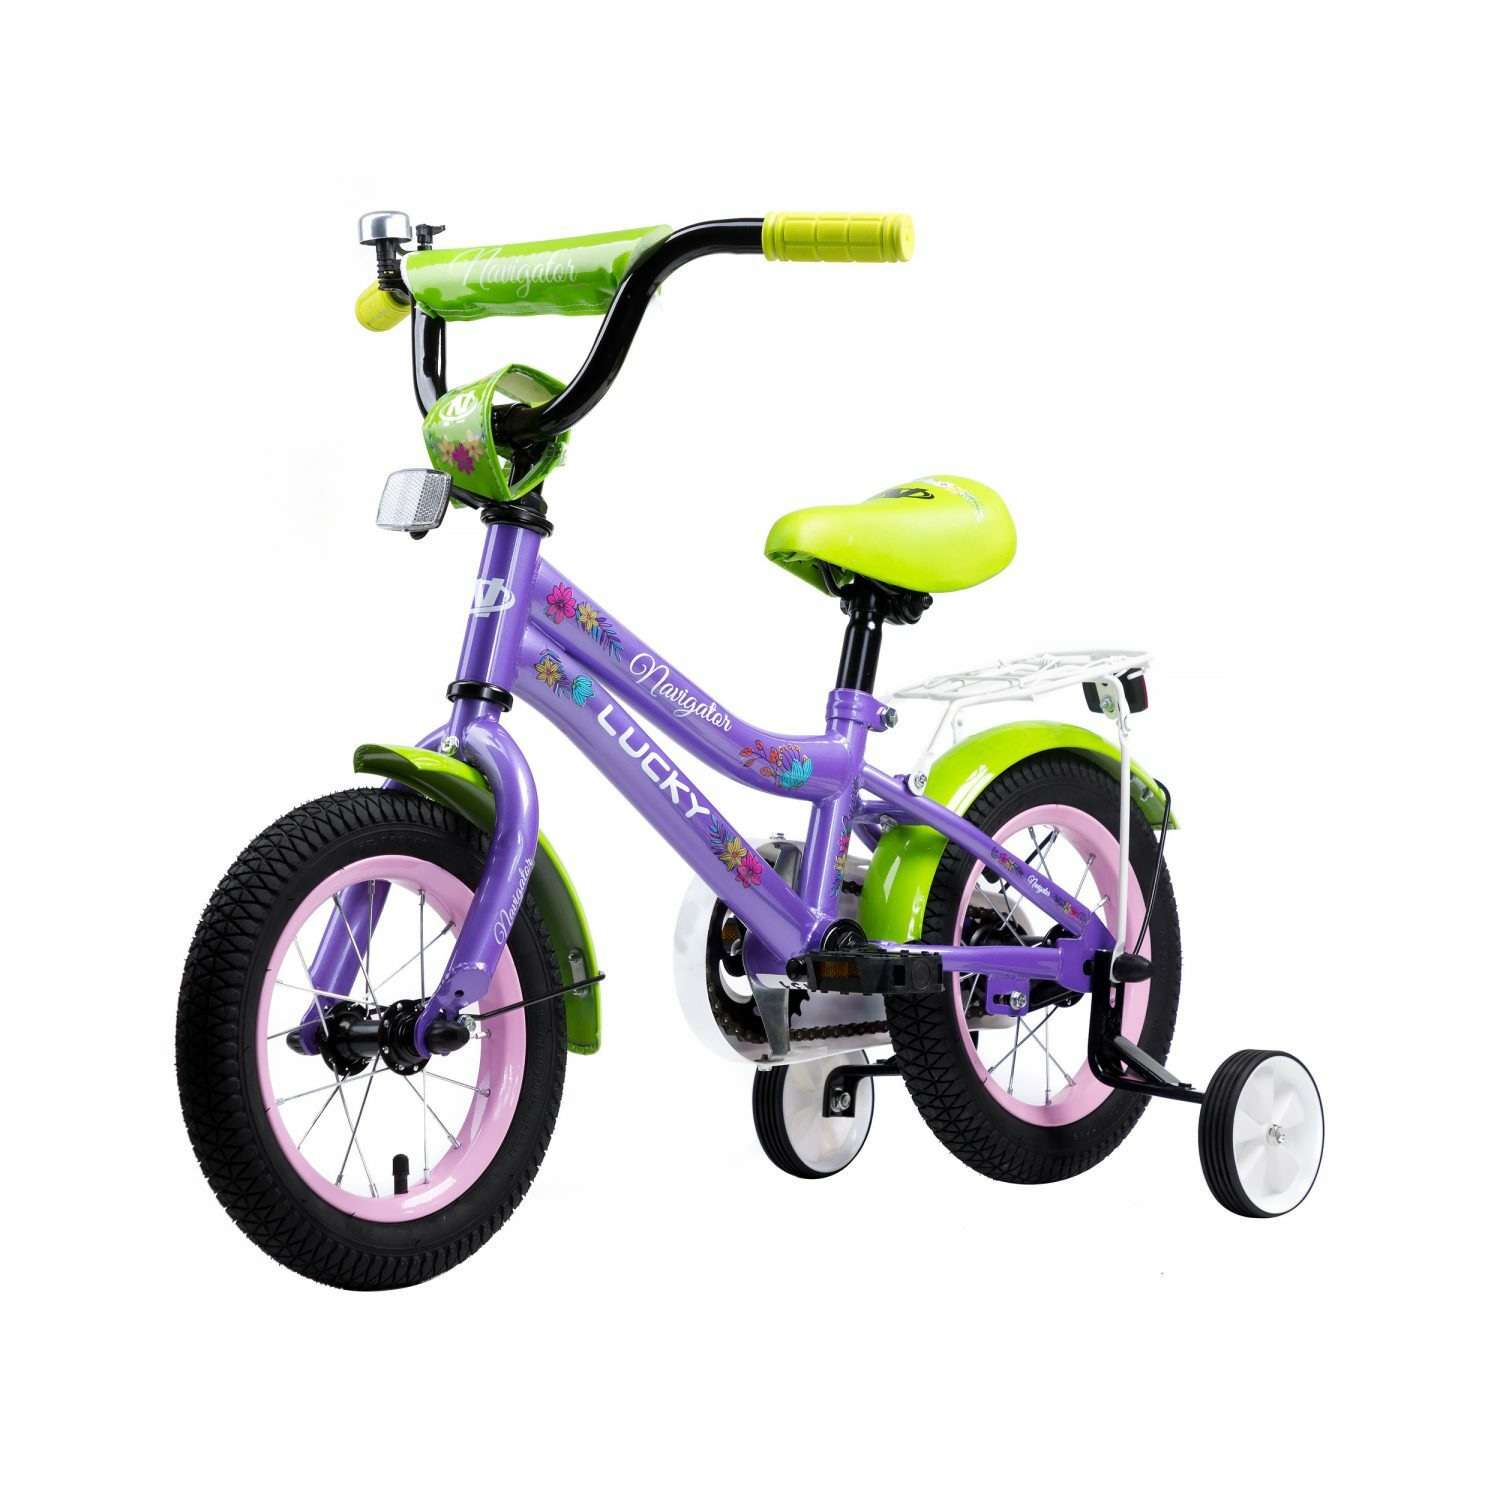 Велосипед детский цена 5 лет